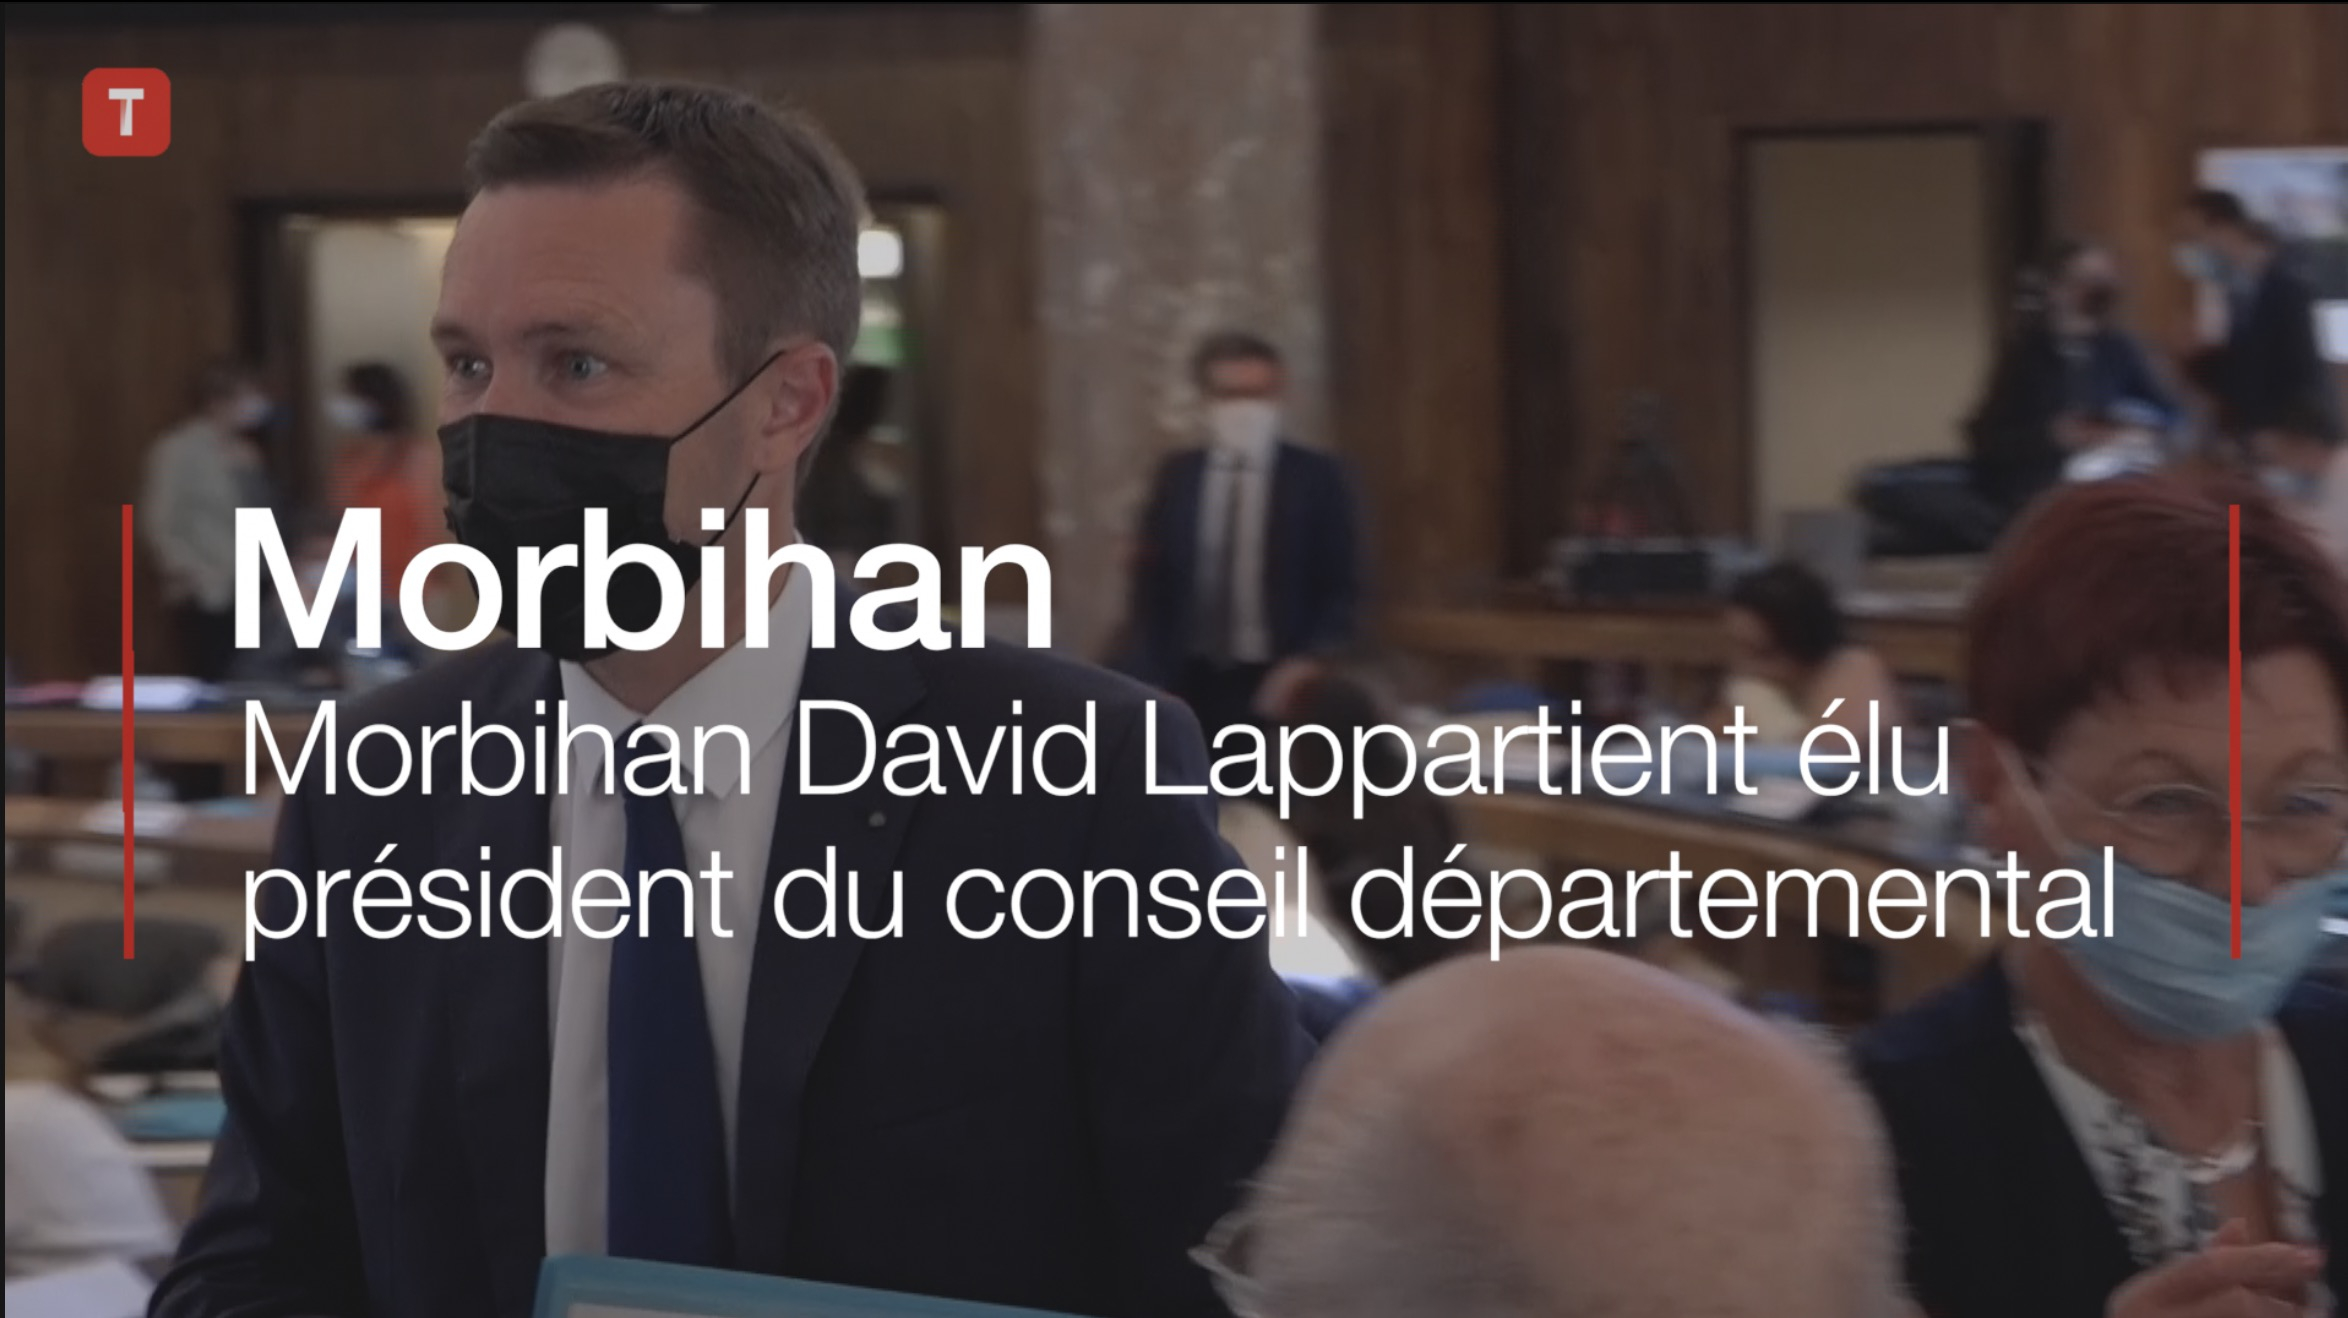 Morbihan. David Lappartient élu président du conseil départemental (Le Télégramme)